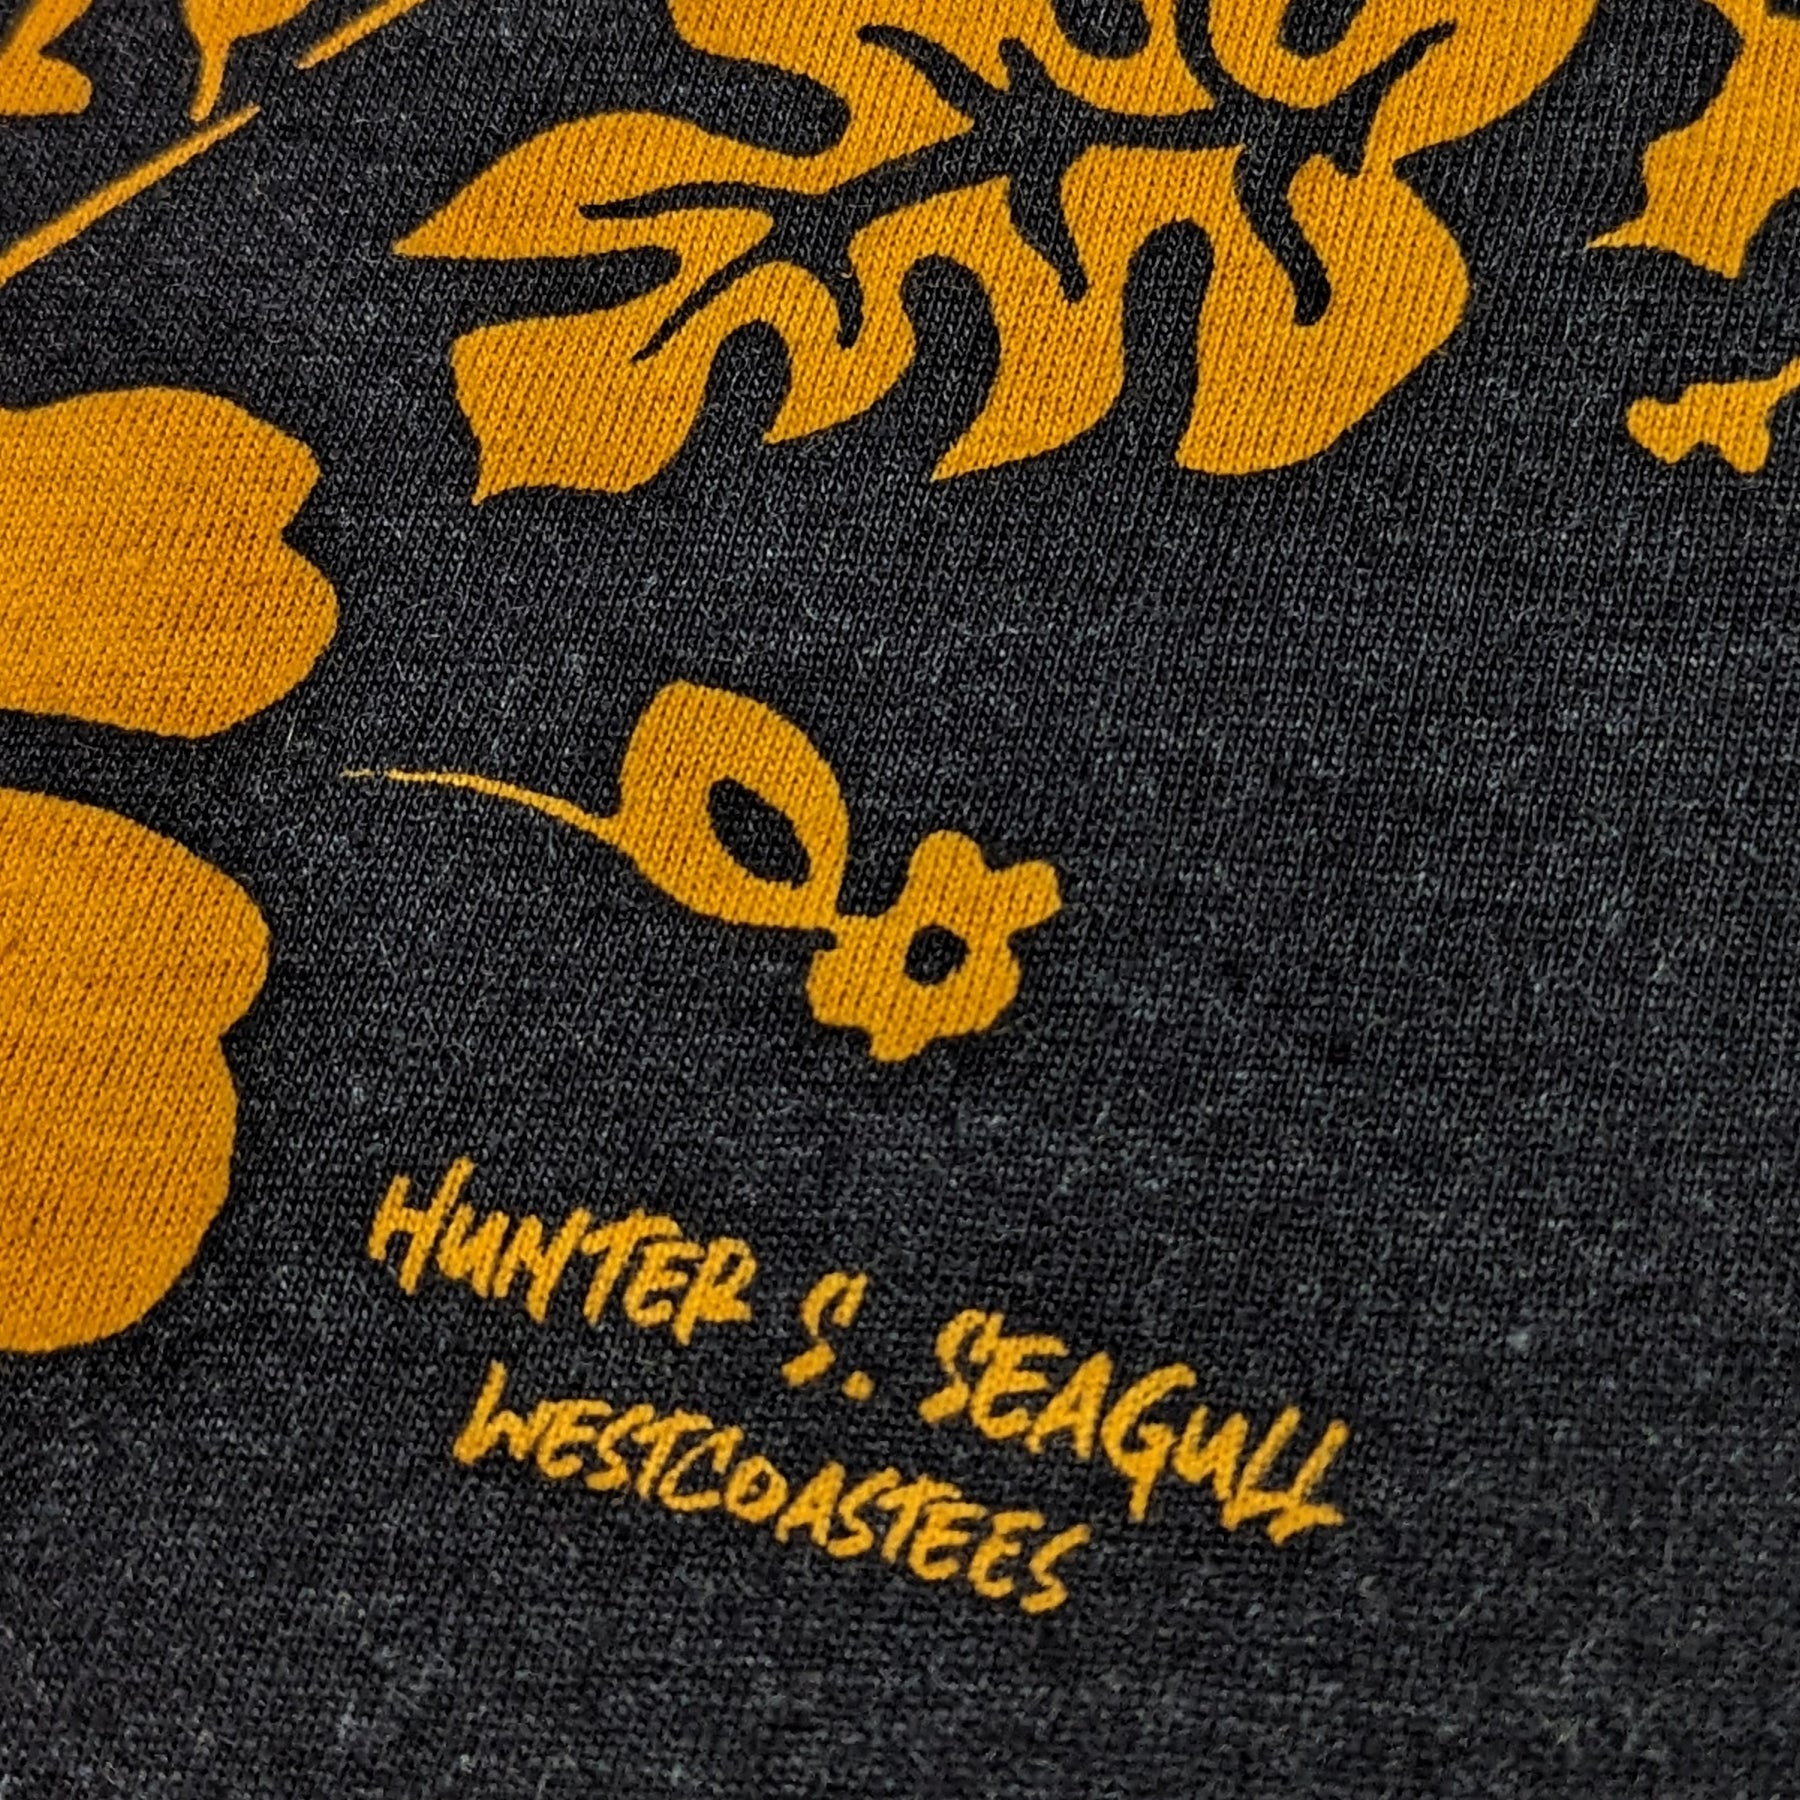 Adult Unisex Hunter S. Seagull T-shirt, ADULT UNISEX TEE'S, Westcoastees, www.westcoastees.com